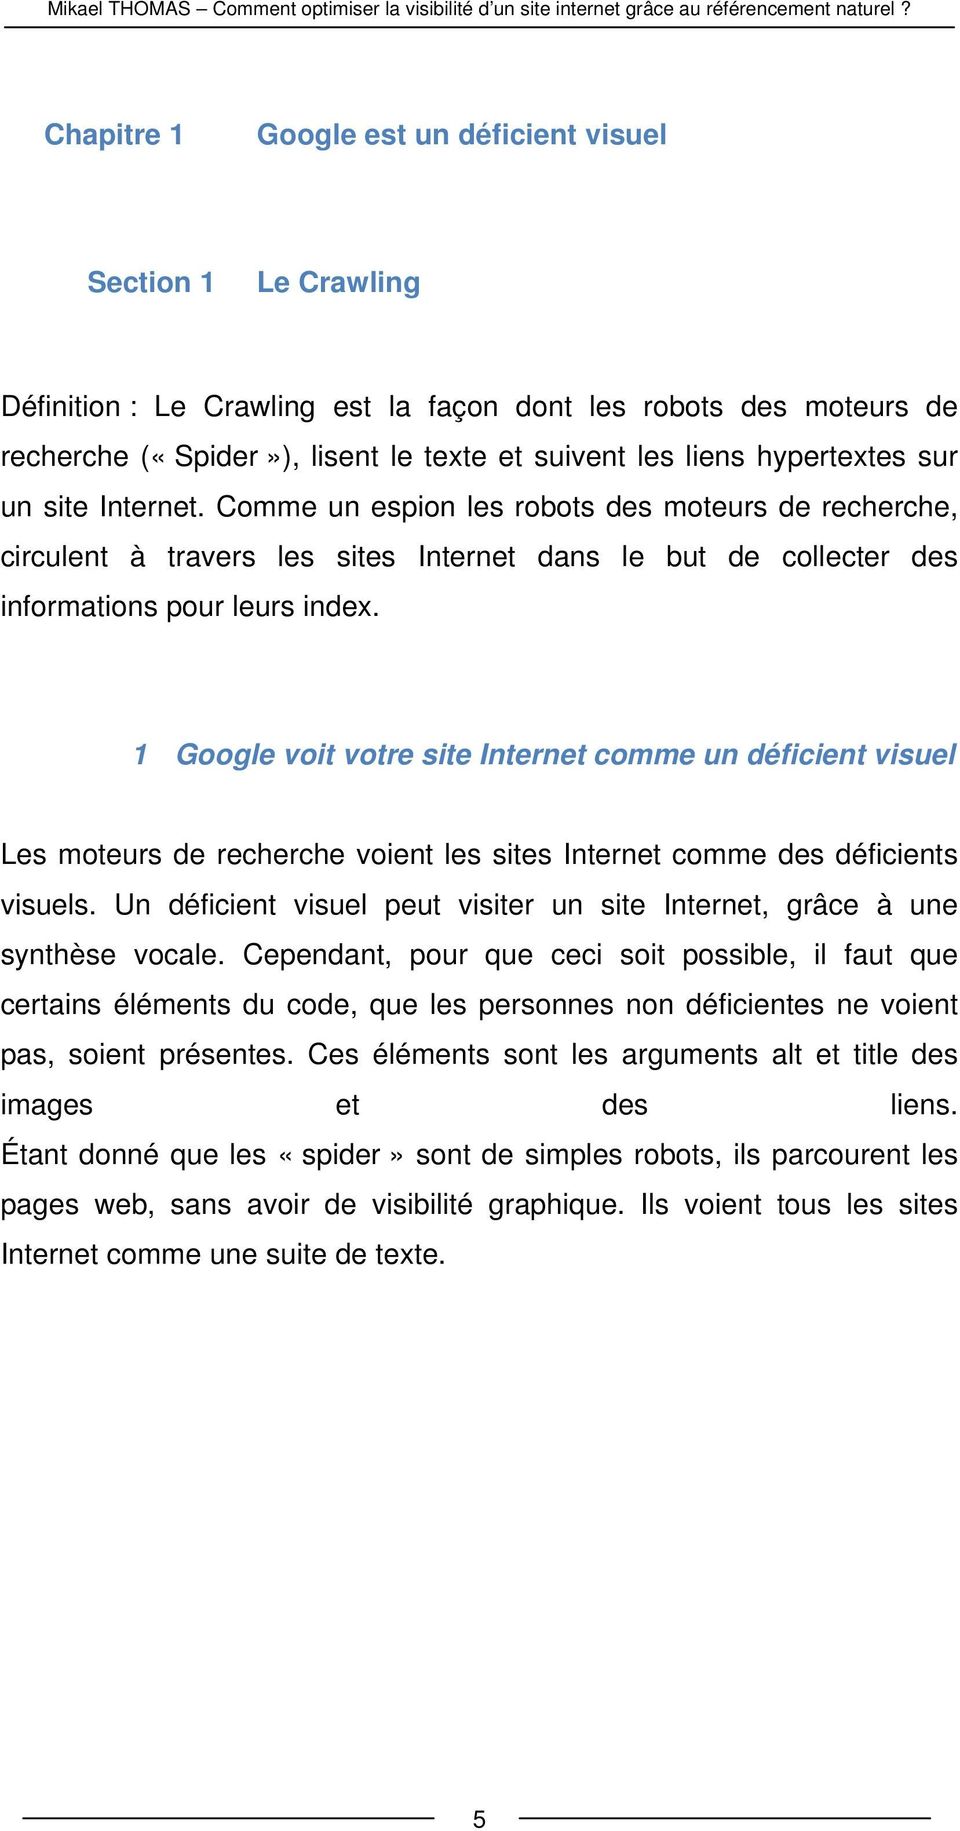 1 Google voit votre site Internet comme un déficient visuel Les moteurs de recherche voient les sites Internet comme des déficients visuels.